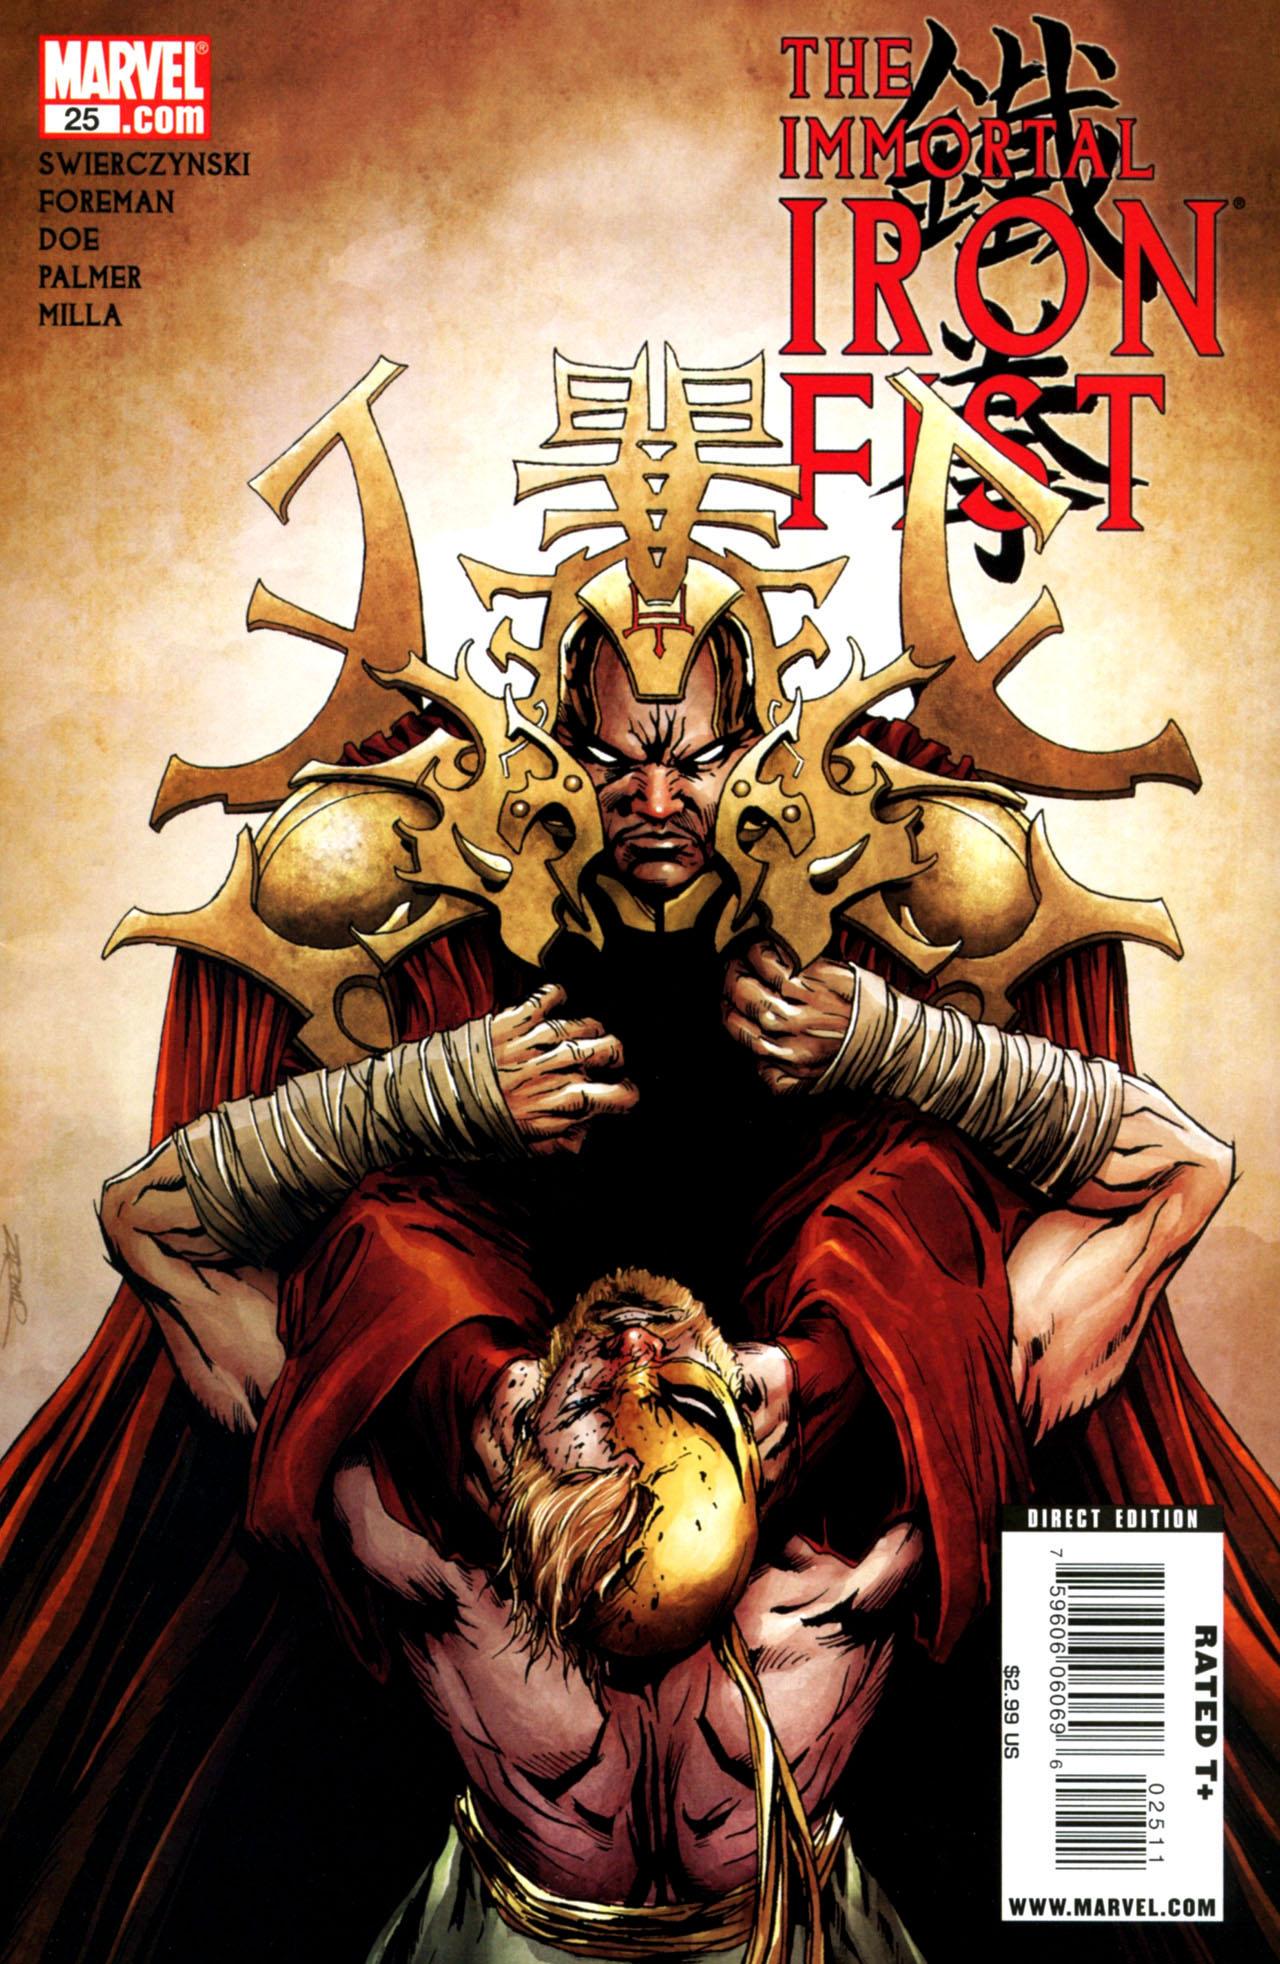 Immortal Iron Fist Vol. 1 #25